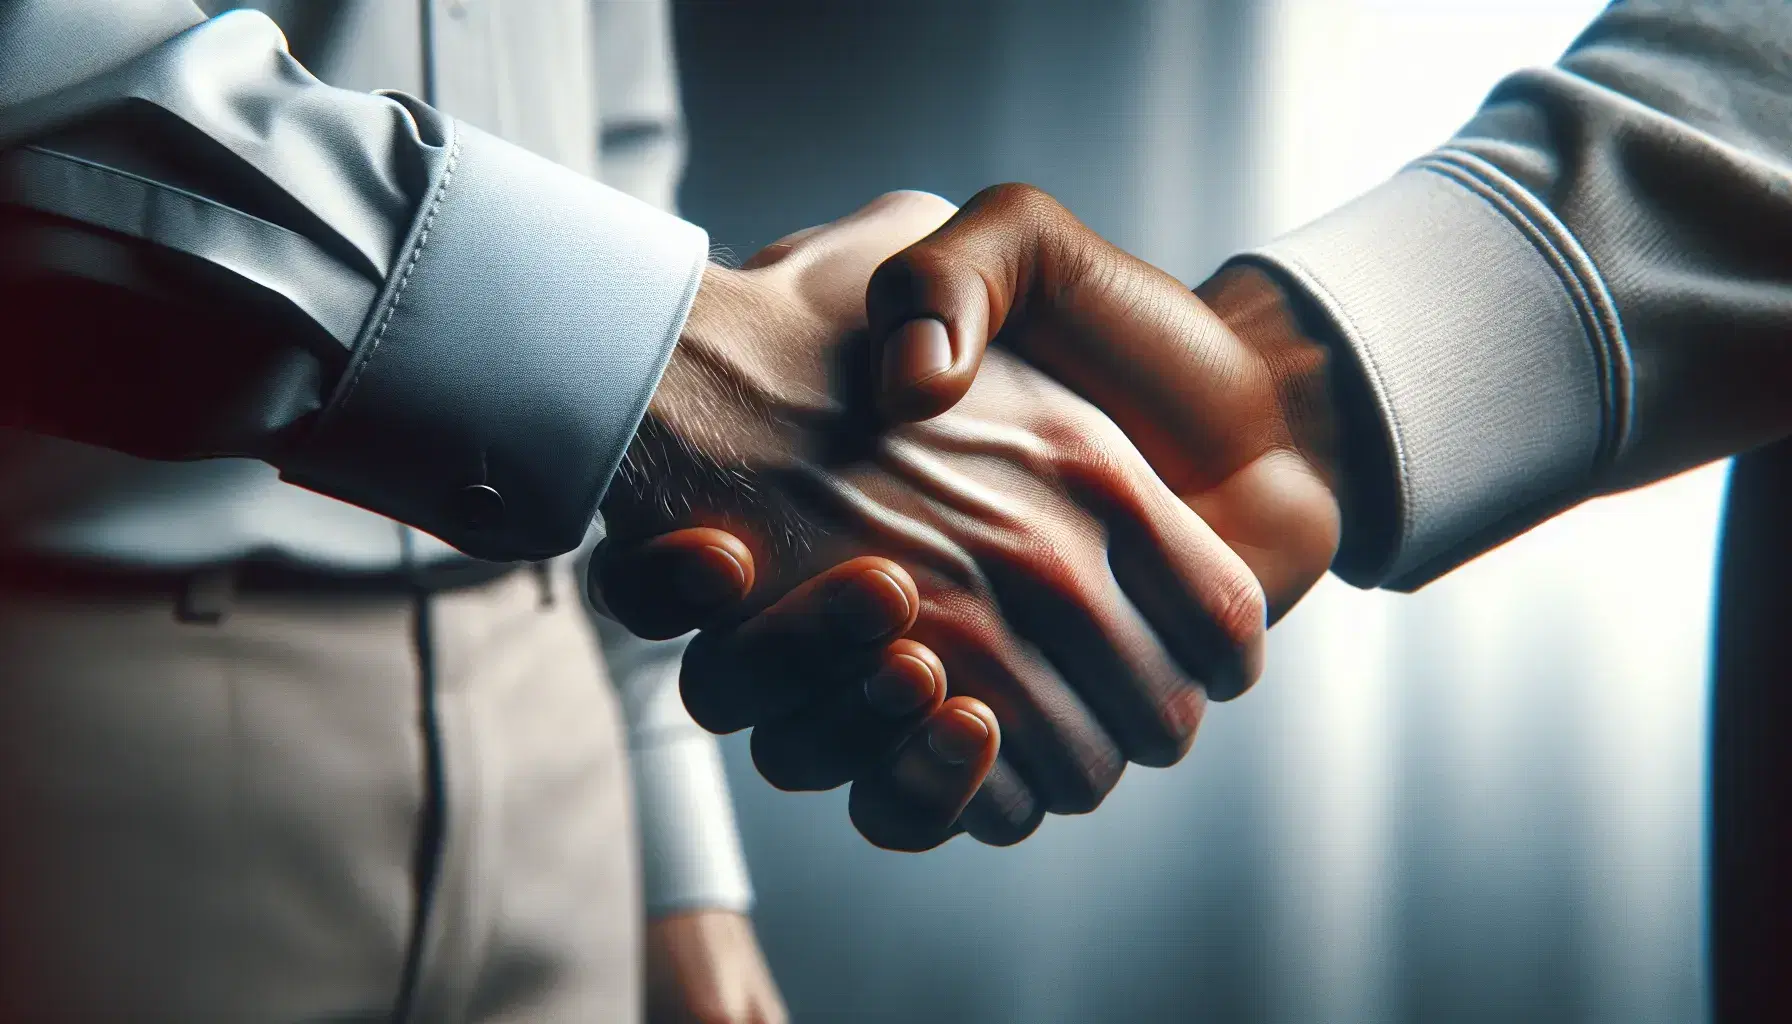 Apretón de manos firme entre dos personas con camisas de manga larga, una azul claro y otra blanca, simbolizando acuerdo y confianza sobre fondo neutro desenfocado.